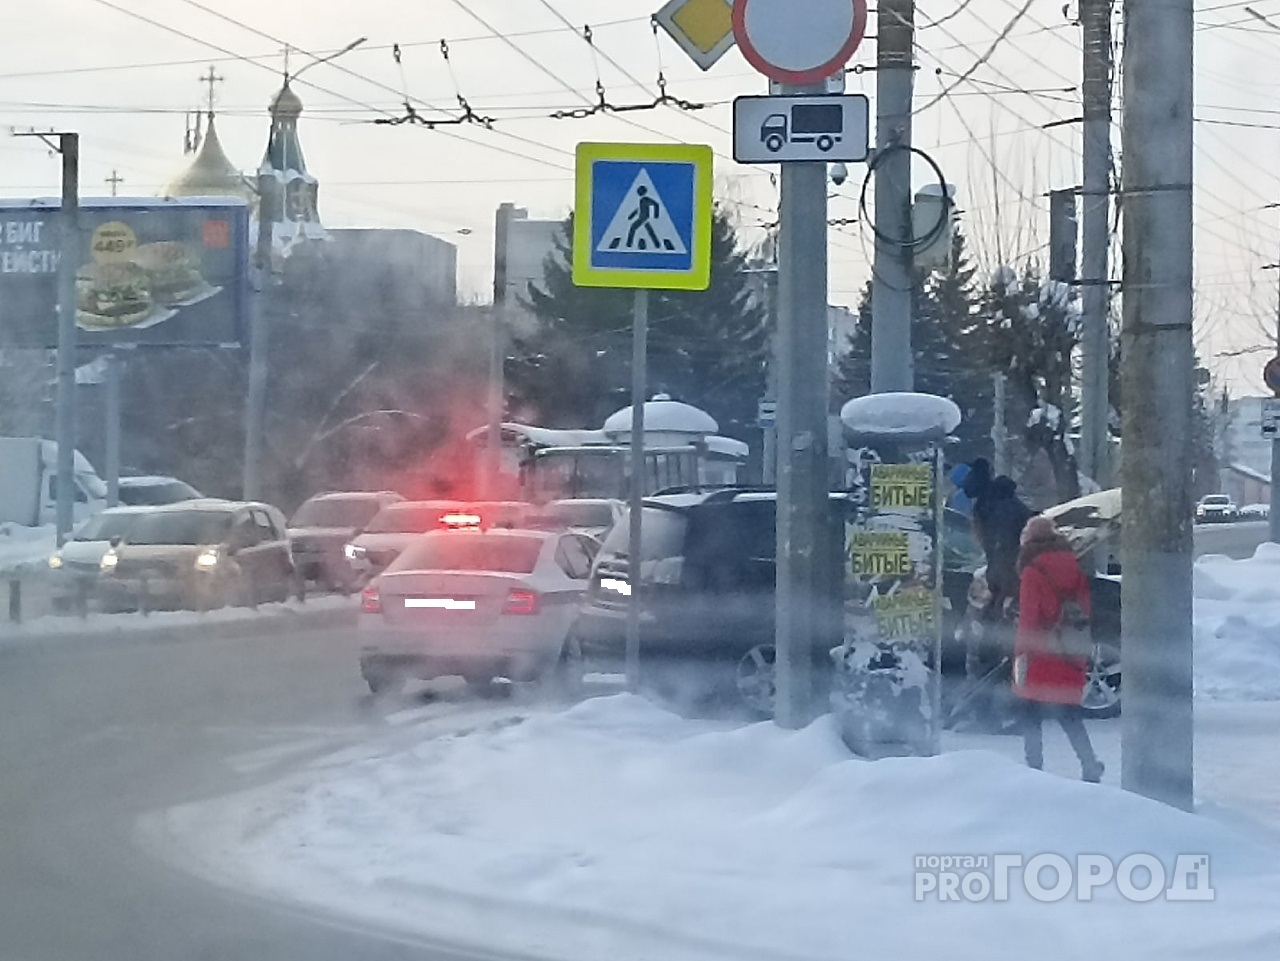 От удара Mitsubishi Outlander отлетела на газон: в Кирове столкнулись иномарка и седан